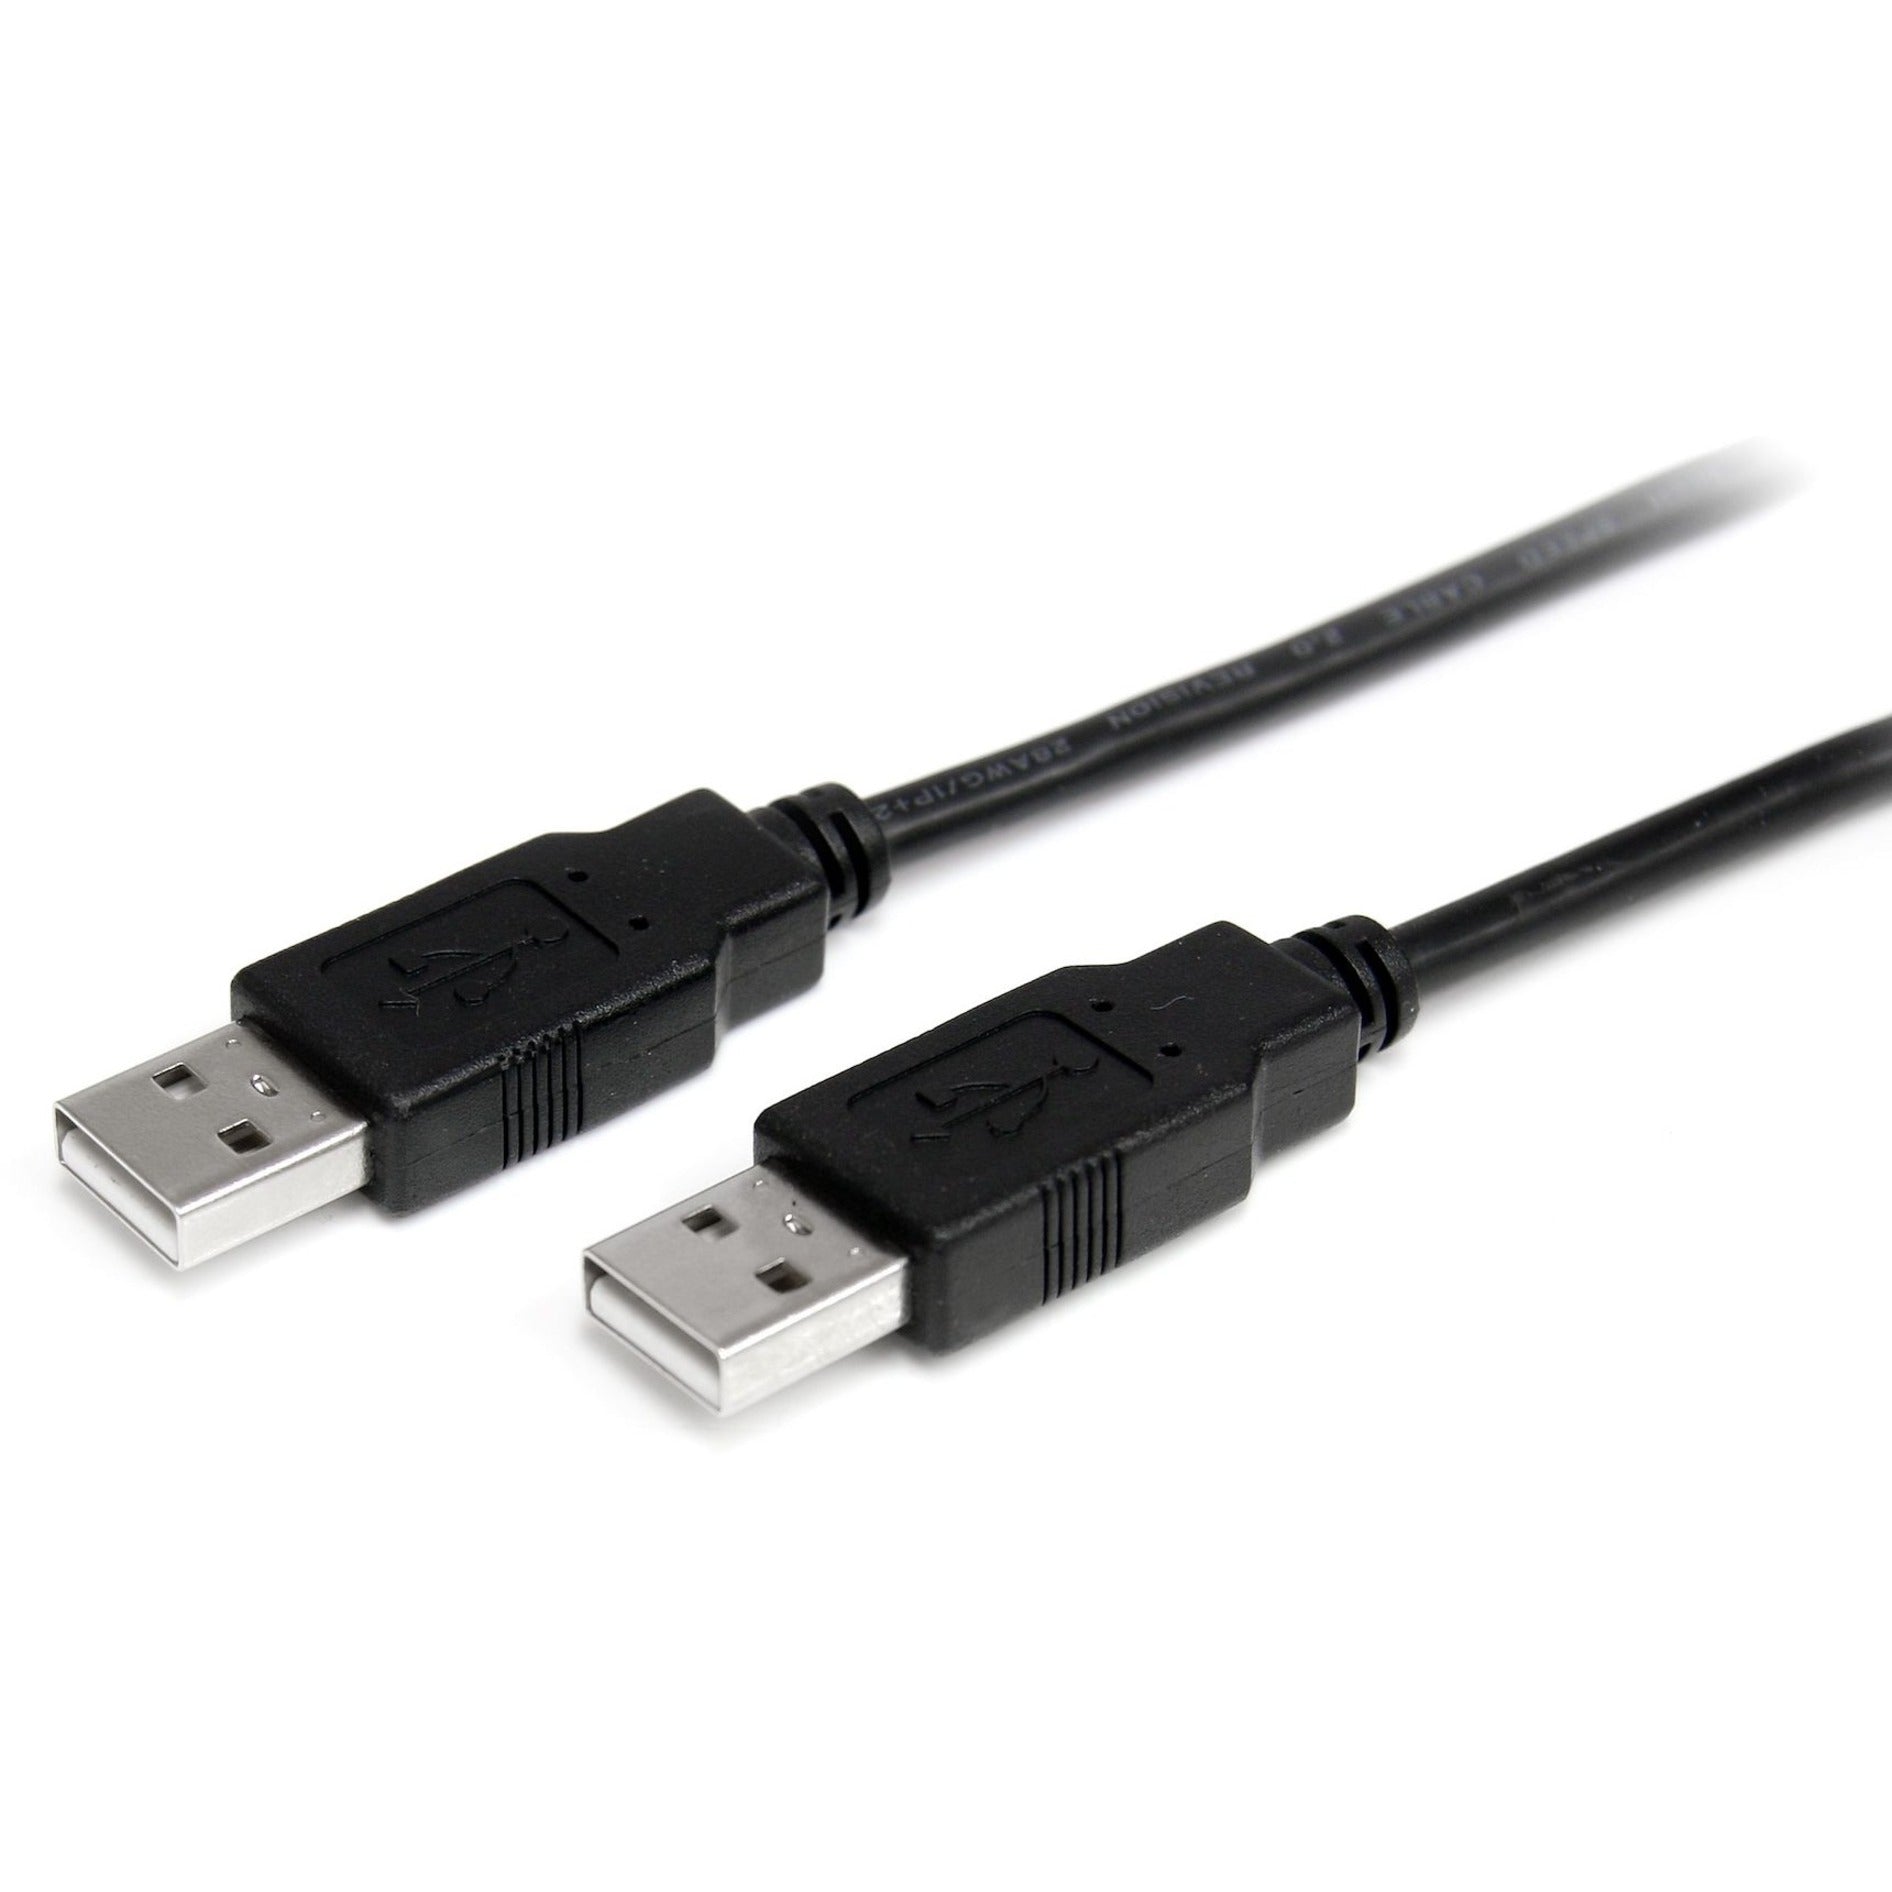 StarTech.com USB2AA1M 1m USB 2.0 A to A Cable - M/M, High-Speed Data Transfer, Lifetime Warranty